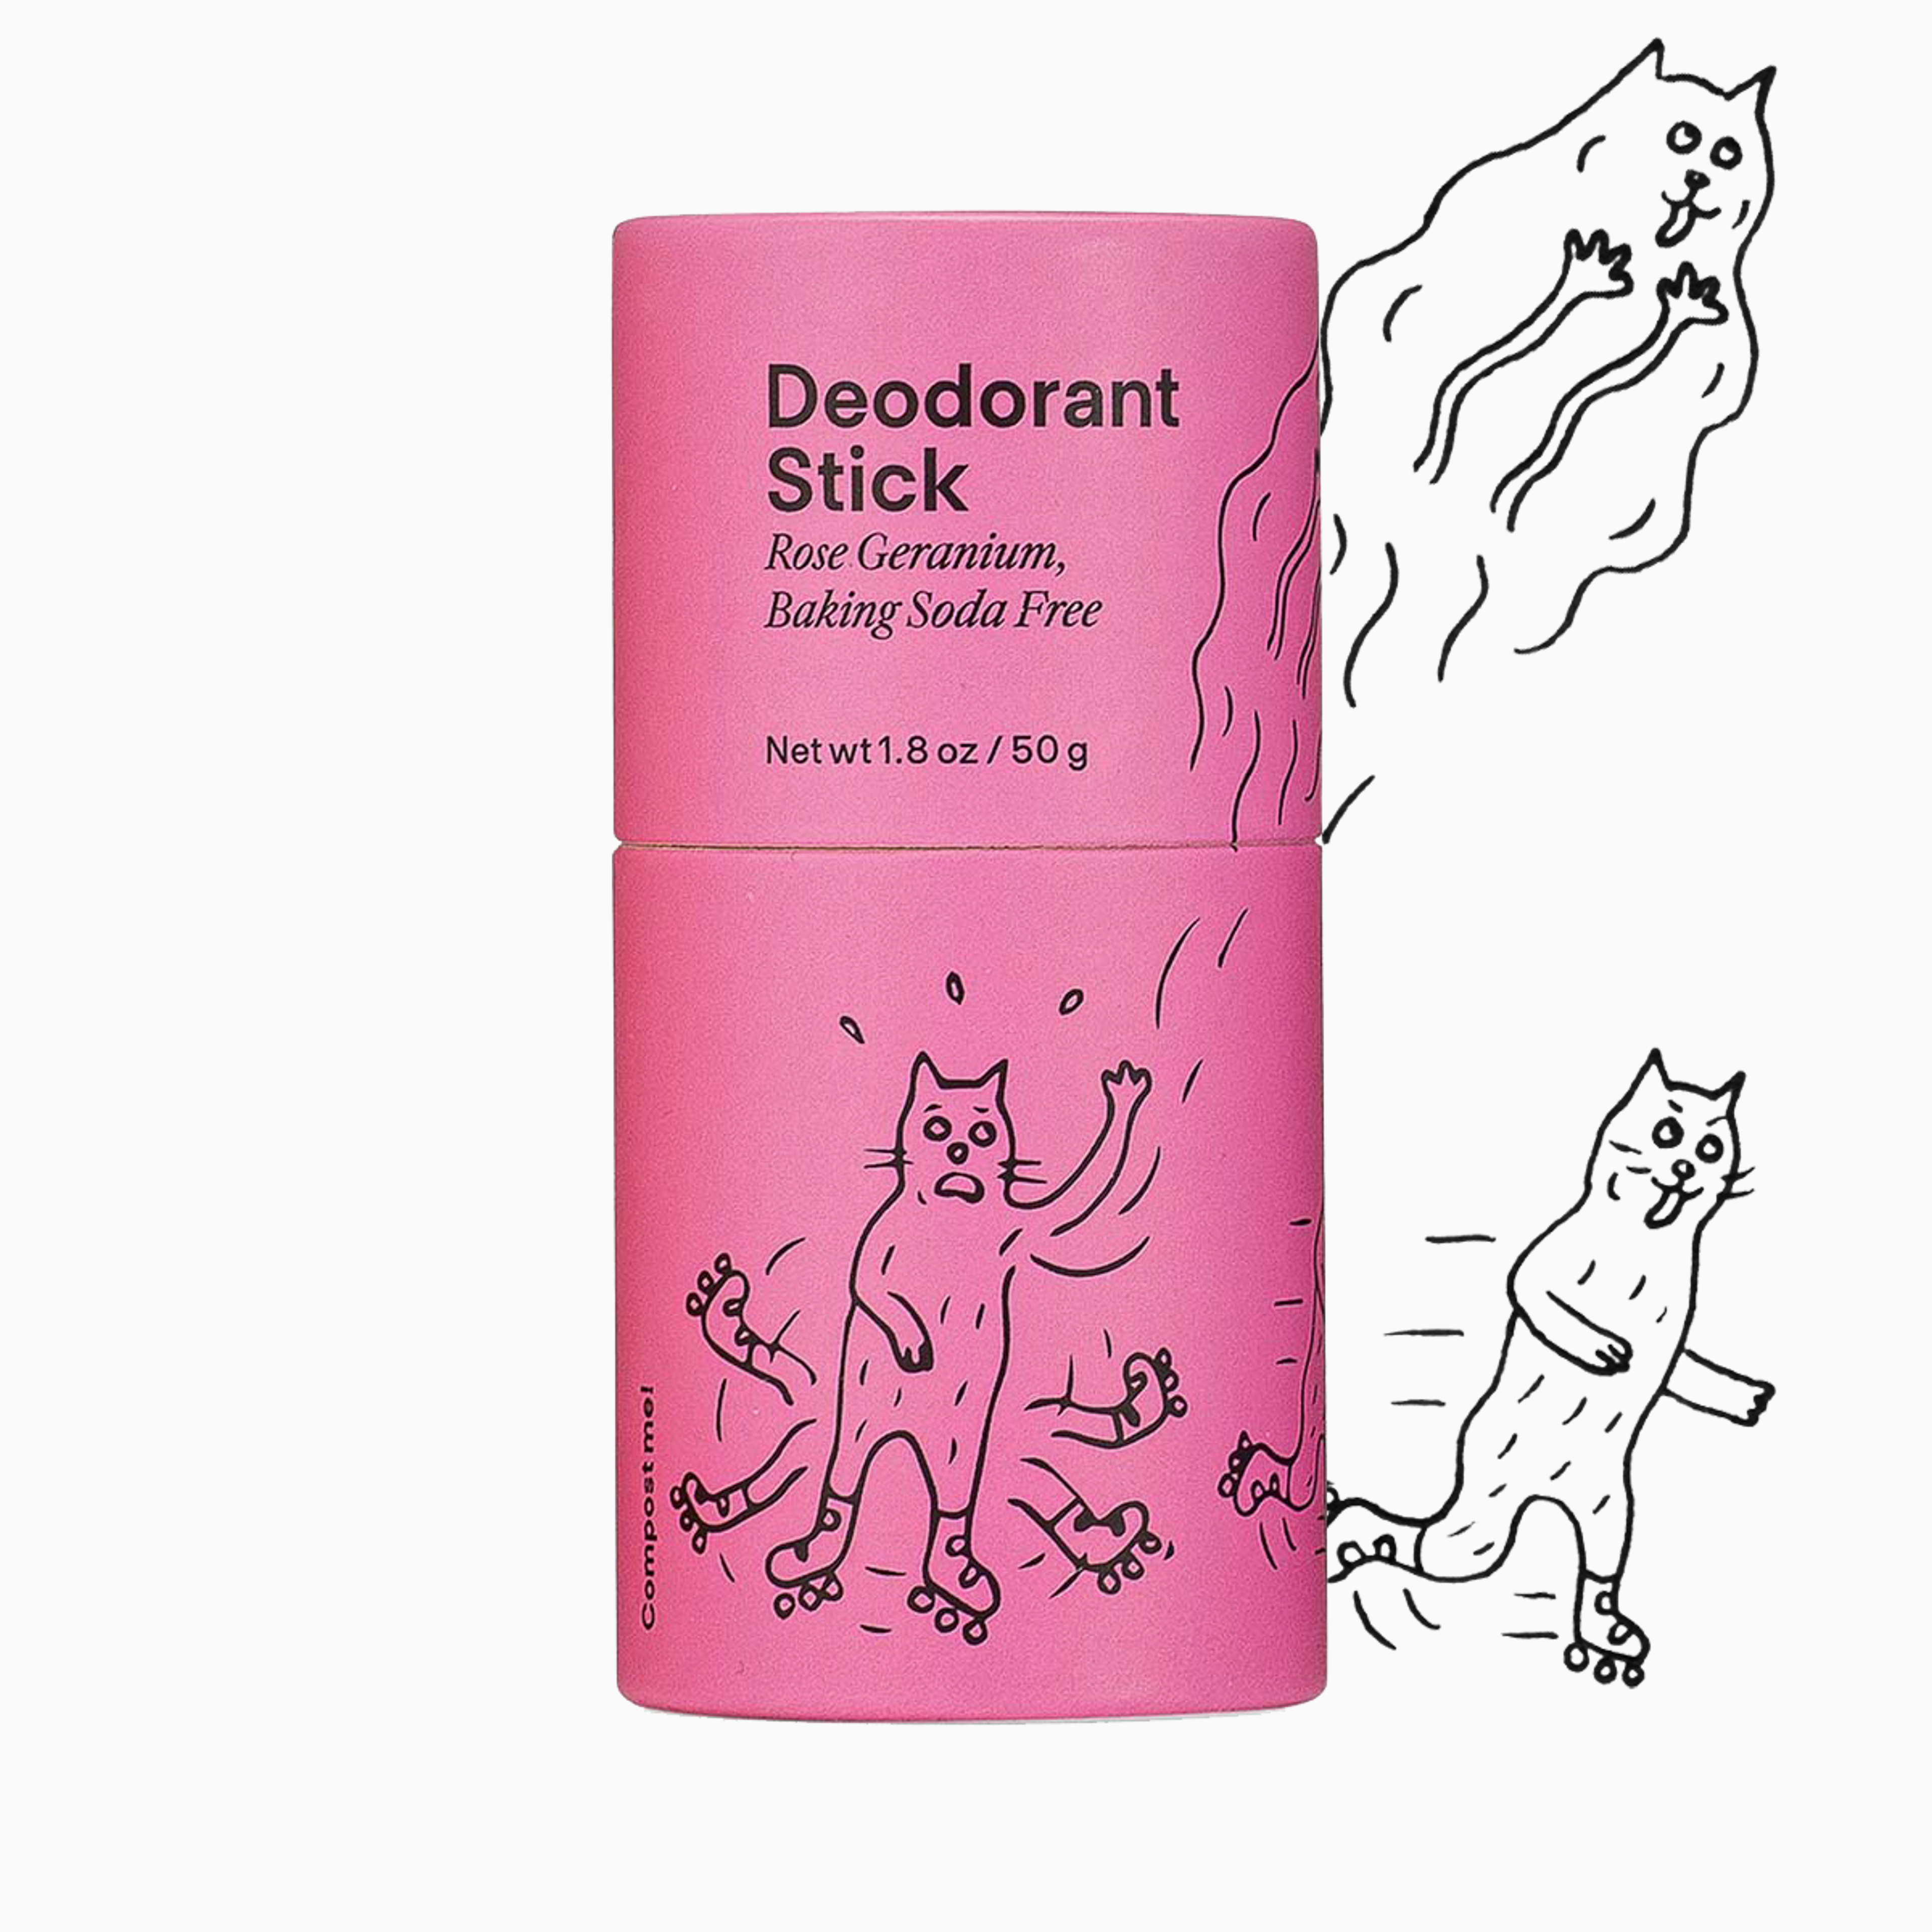 Deodorant Stick - Rose Geranium (Baking Soda Free)